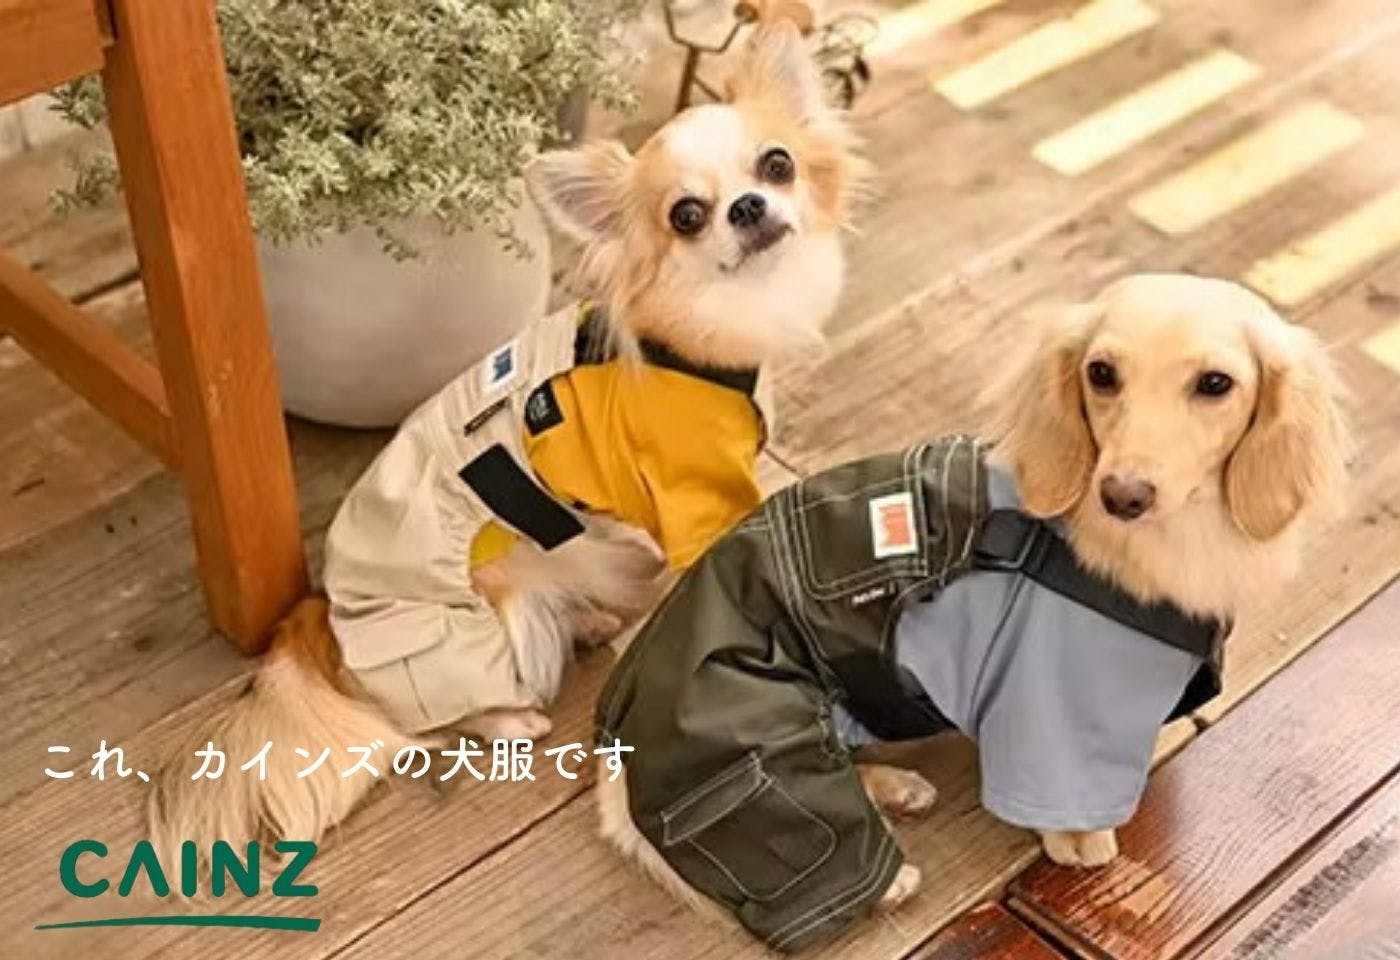 ホームセンターなのに犬服が可愛い！ カインズのペットウェア進化のヒミツ|ワンクォール